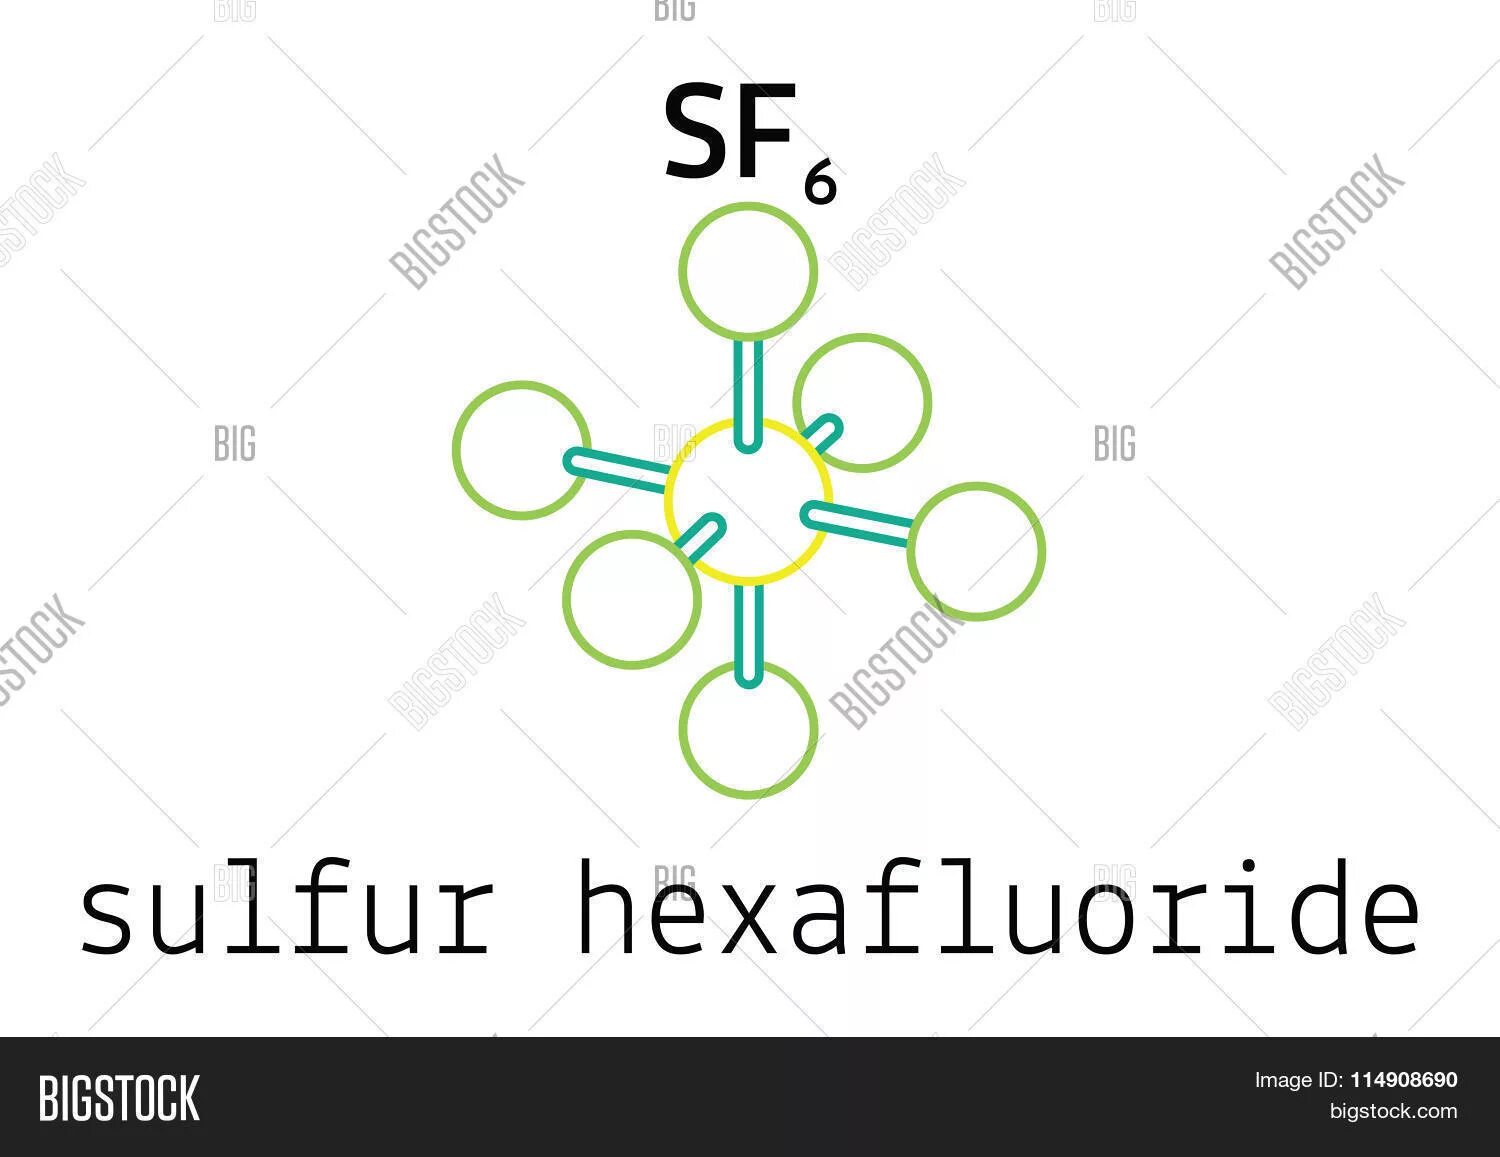 6 молекул серы. Гексафторид серы sf6. Молекула sf6. Sf6 элегаз. Строение гексафторида серы.